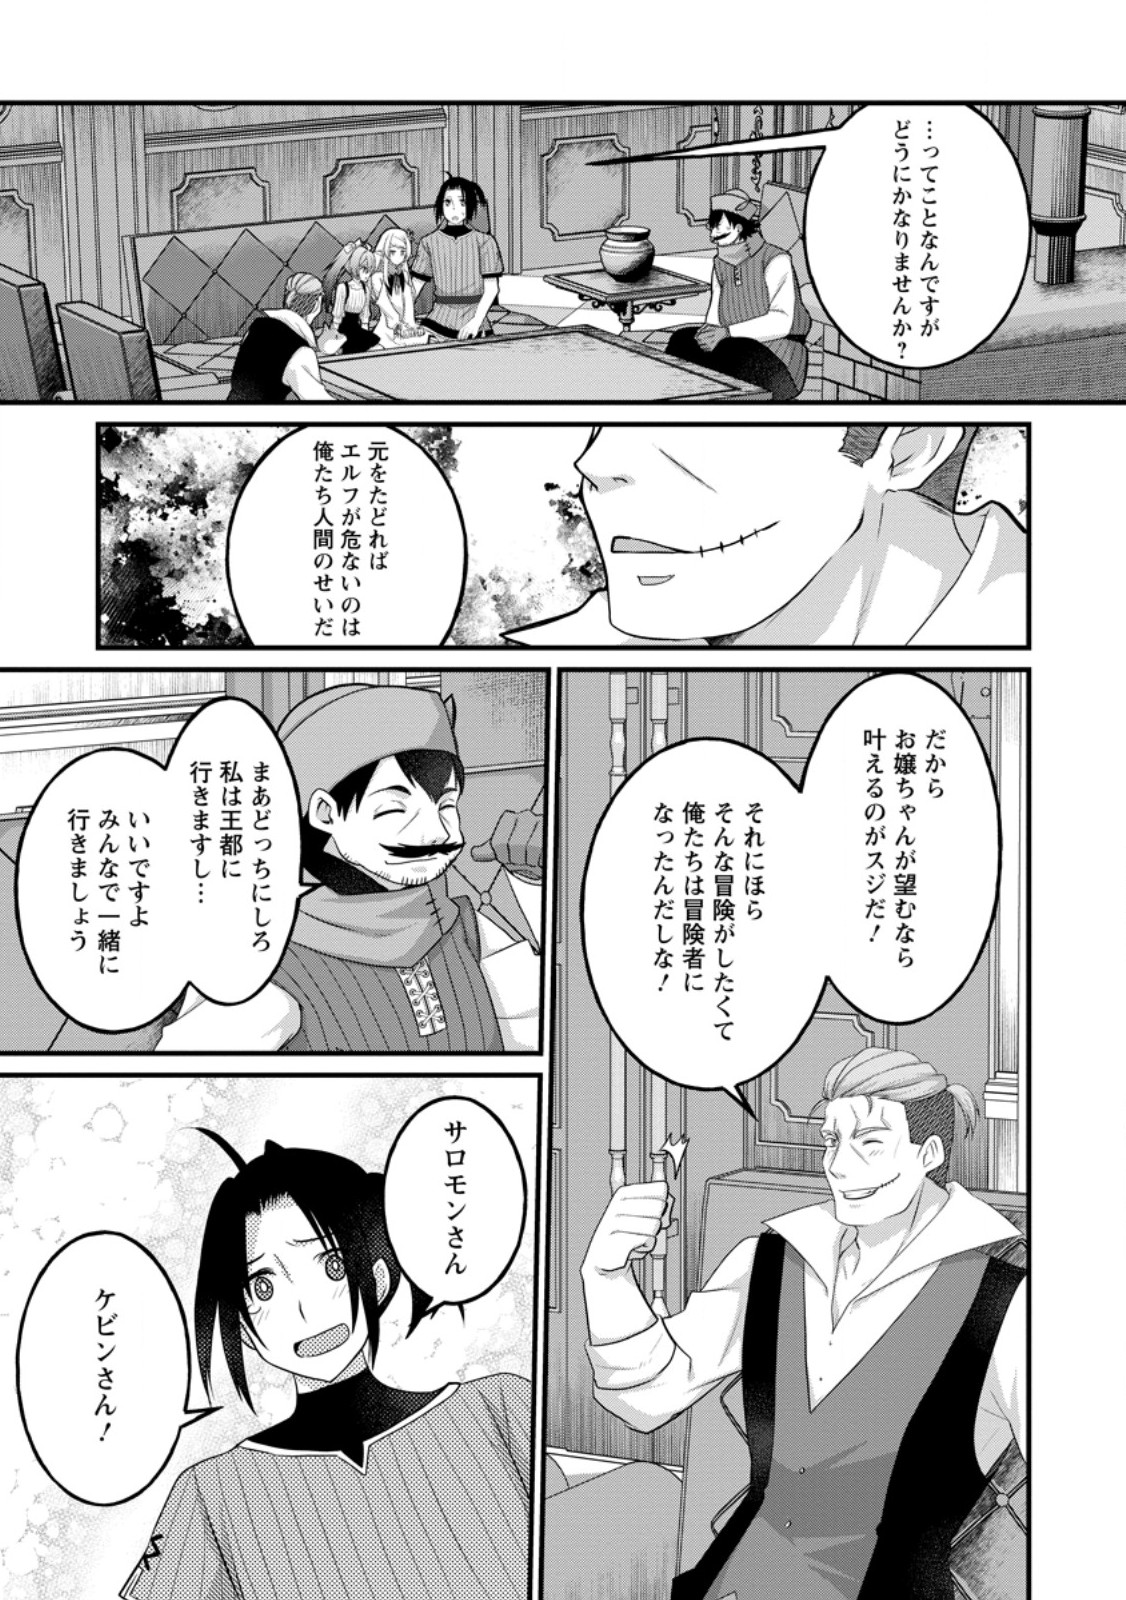 10-nen Goshi no HikiNEET wo Yamete Gaishutsu shitara Jitakugo to Isekai ni Tenishiteta - Chapter 13.3 - Page 9